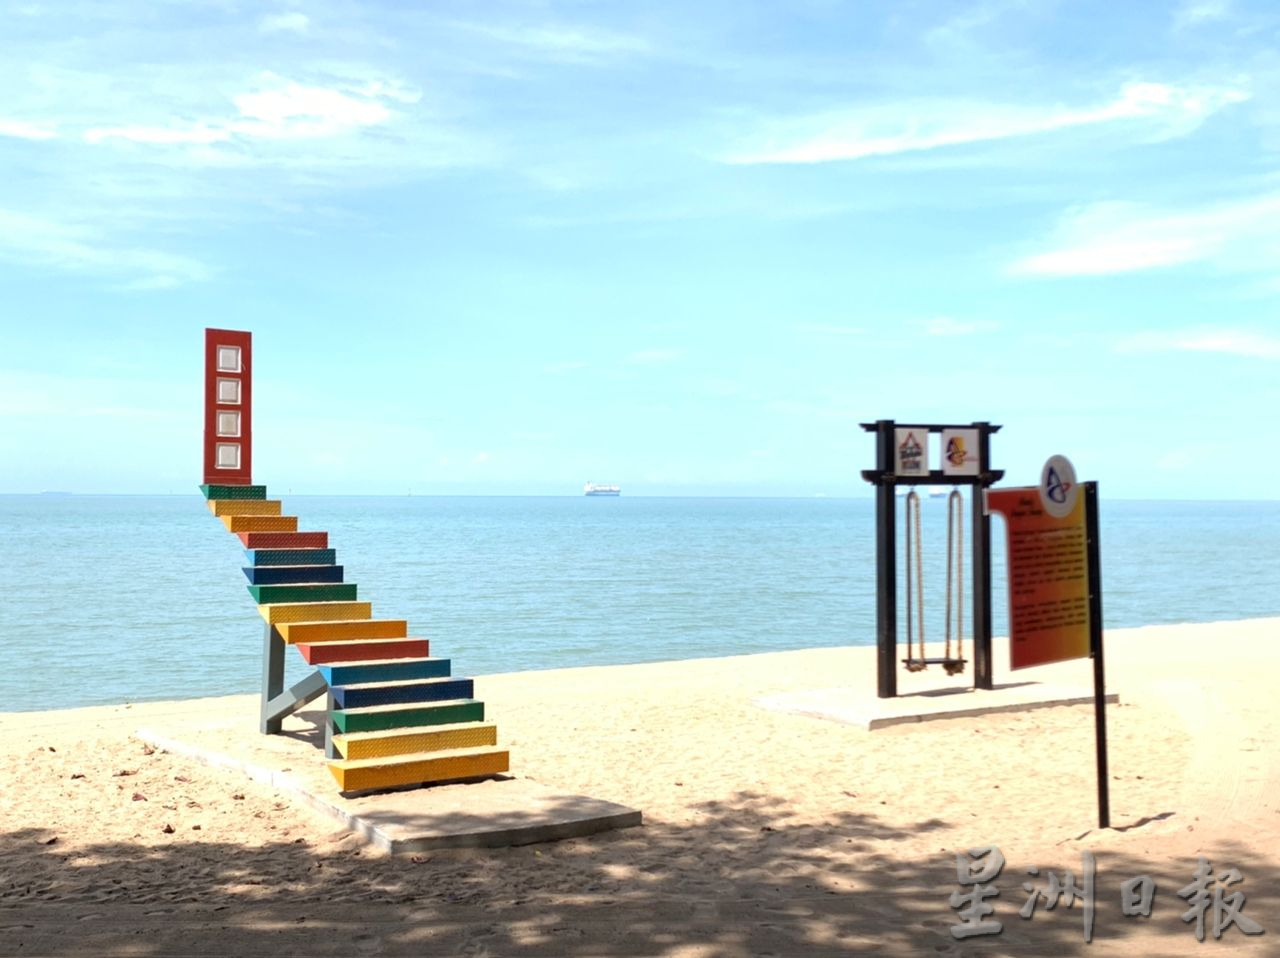 （古城封面主文）亚罗牙也市议会3海滩设“彩虹天梯”及秋千